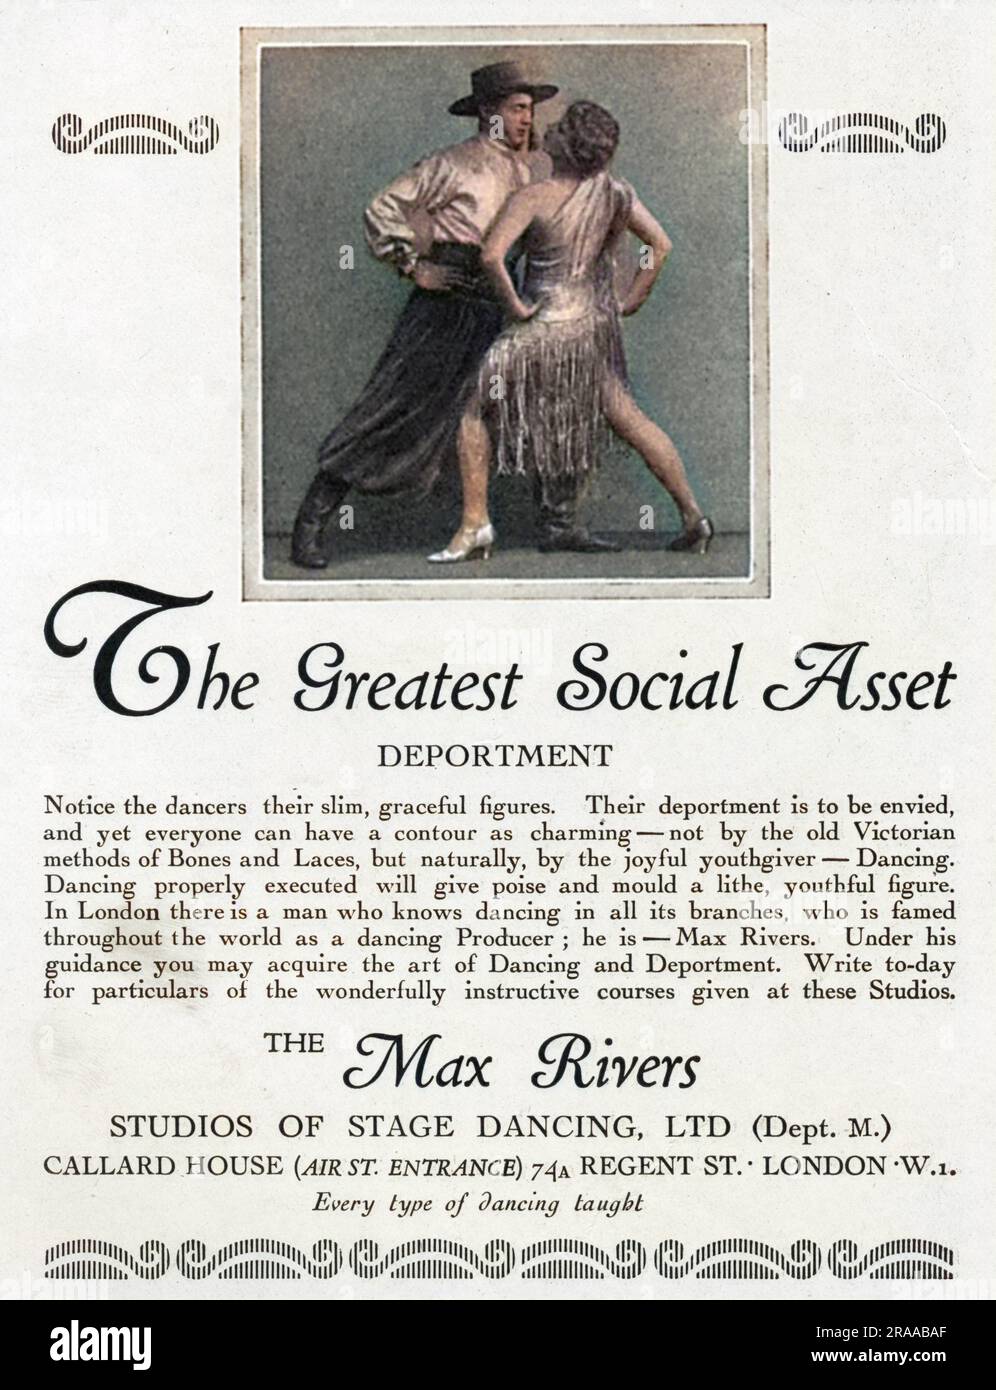 Pubblicità per i Max Rivers Studios di Stage Dancing, il modo per raggiungere un lithe e una figura aggraziata secondo la copia. Data: 1928 Foto Stock